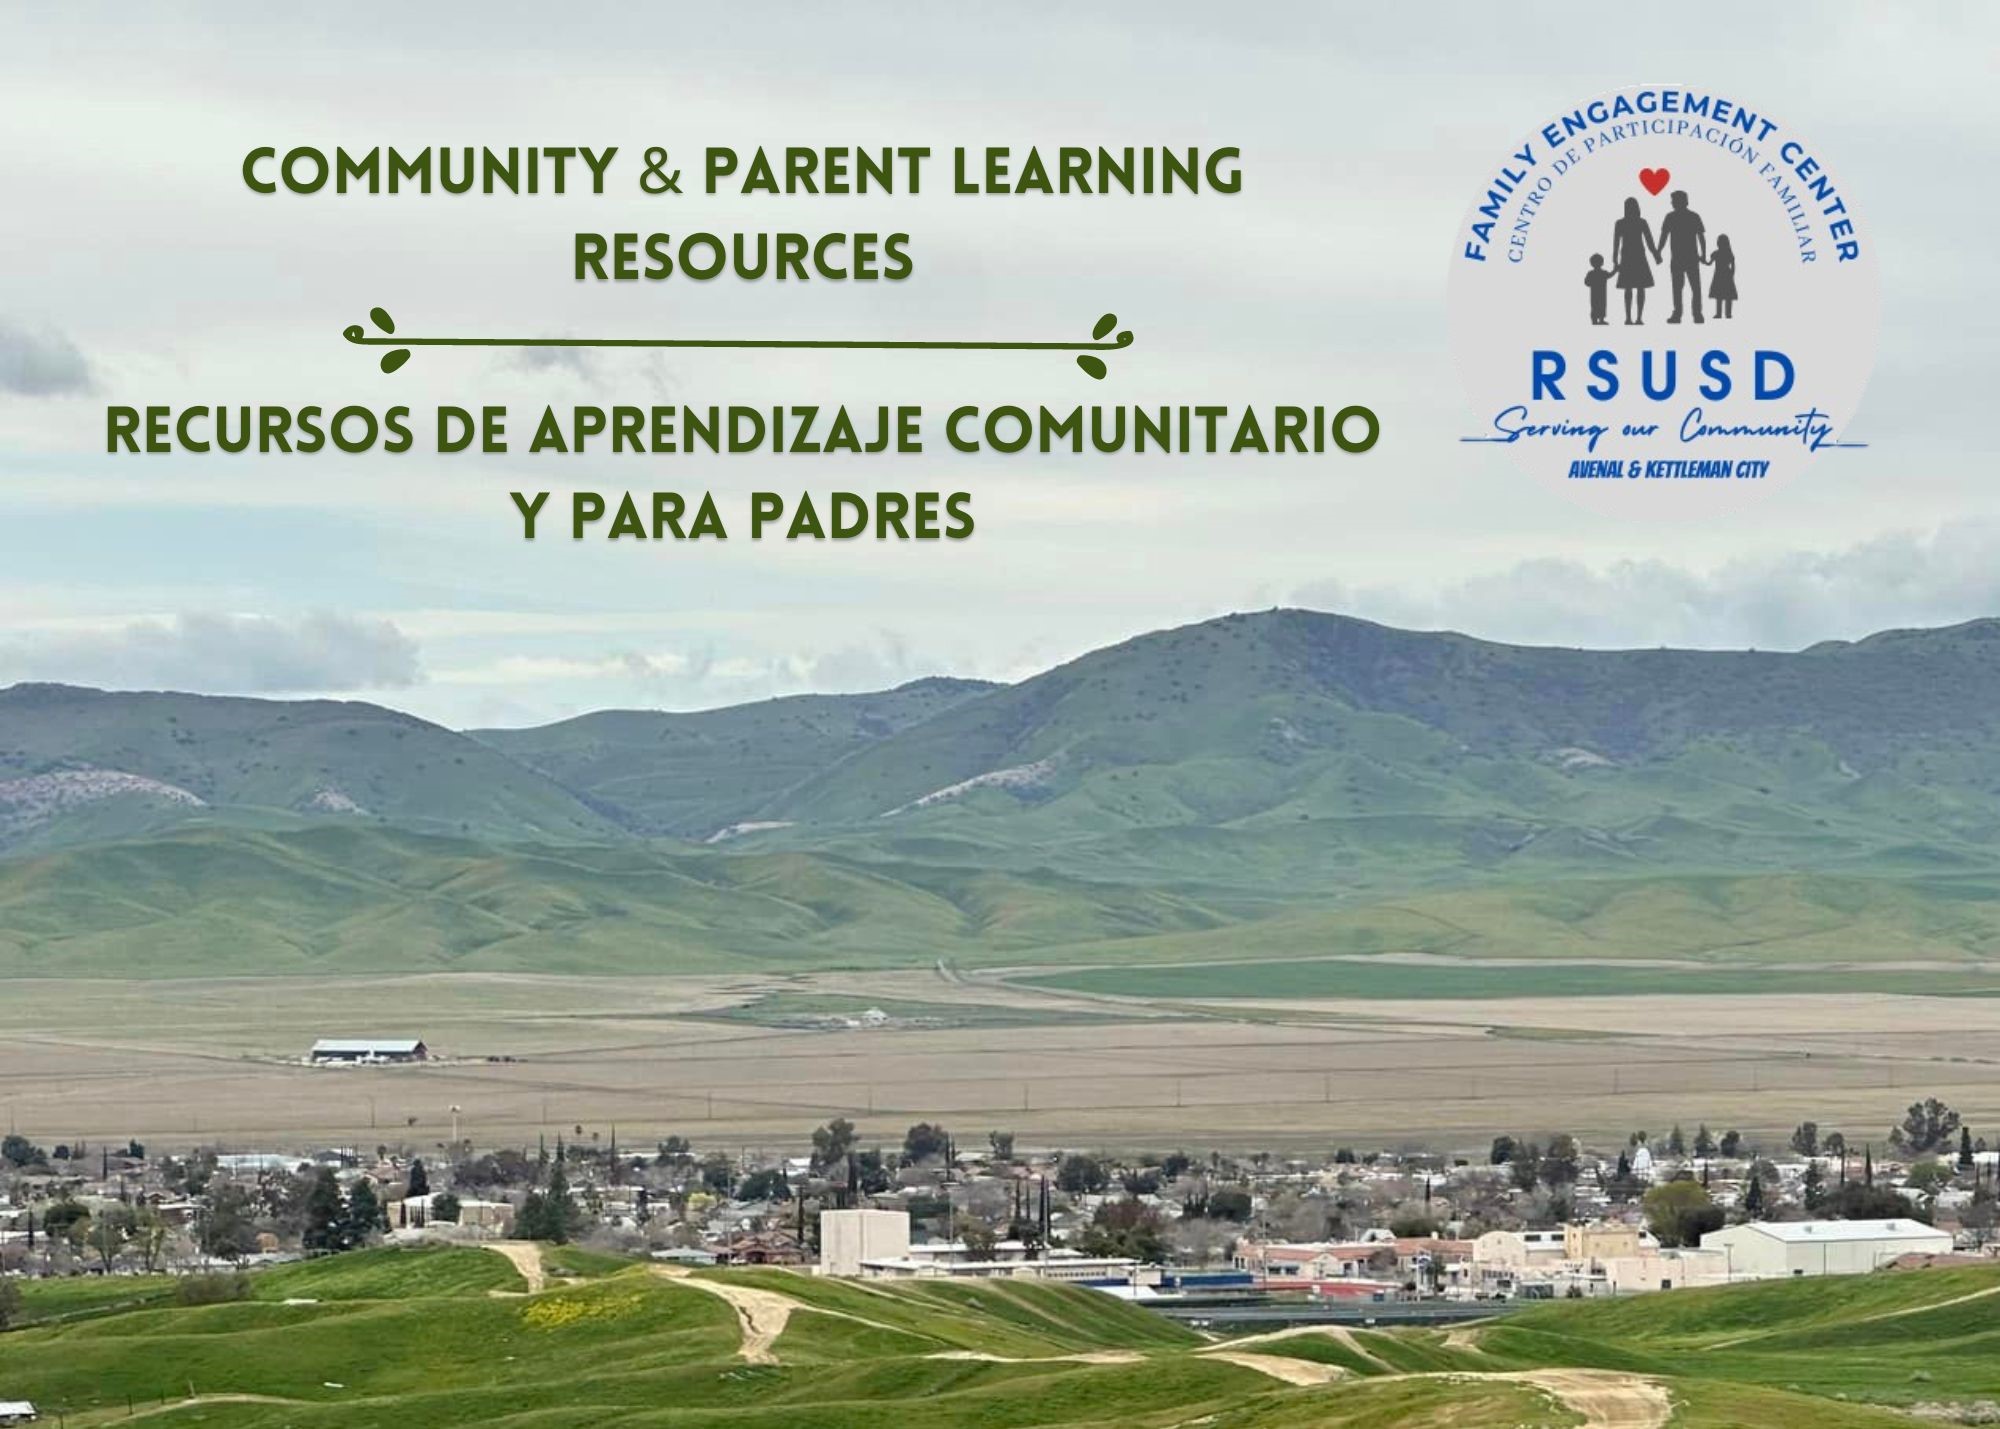 COMMUNITY & PARENT LEARNING RESOURCES/RECURSOS DE APRENDIZAJE COMUNITARIO Y PARA PADRES